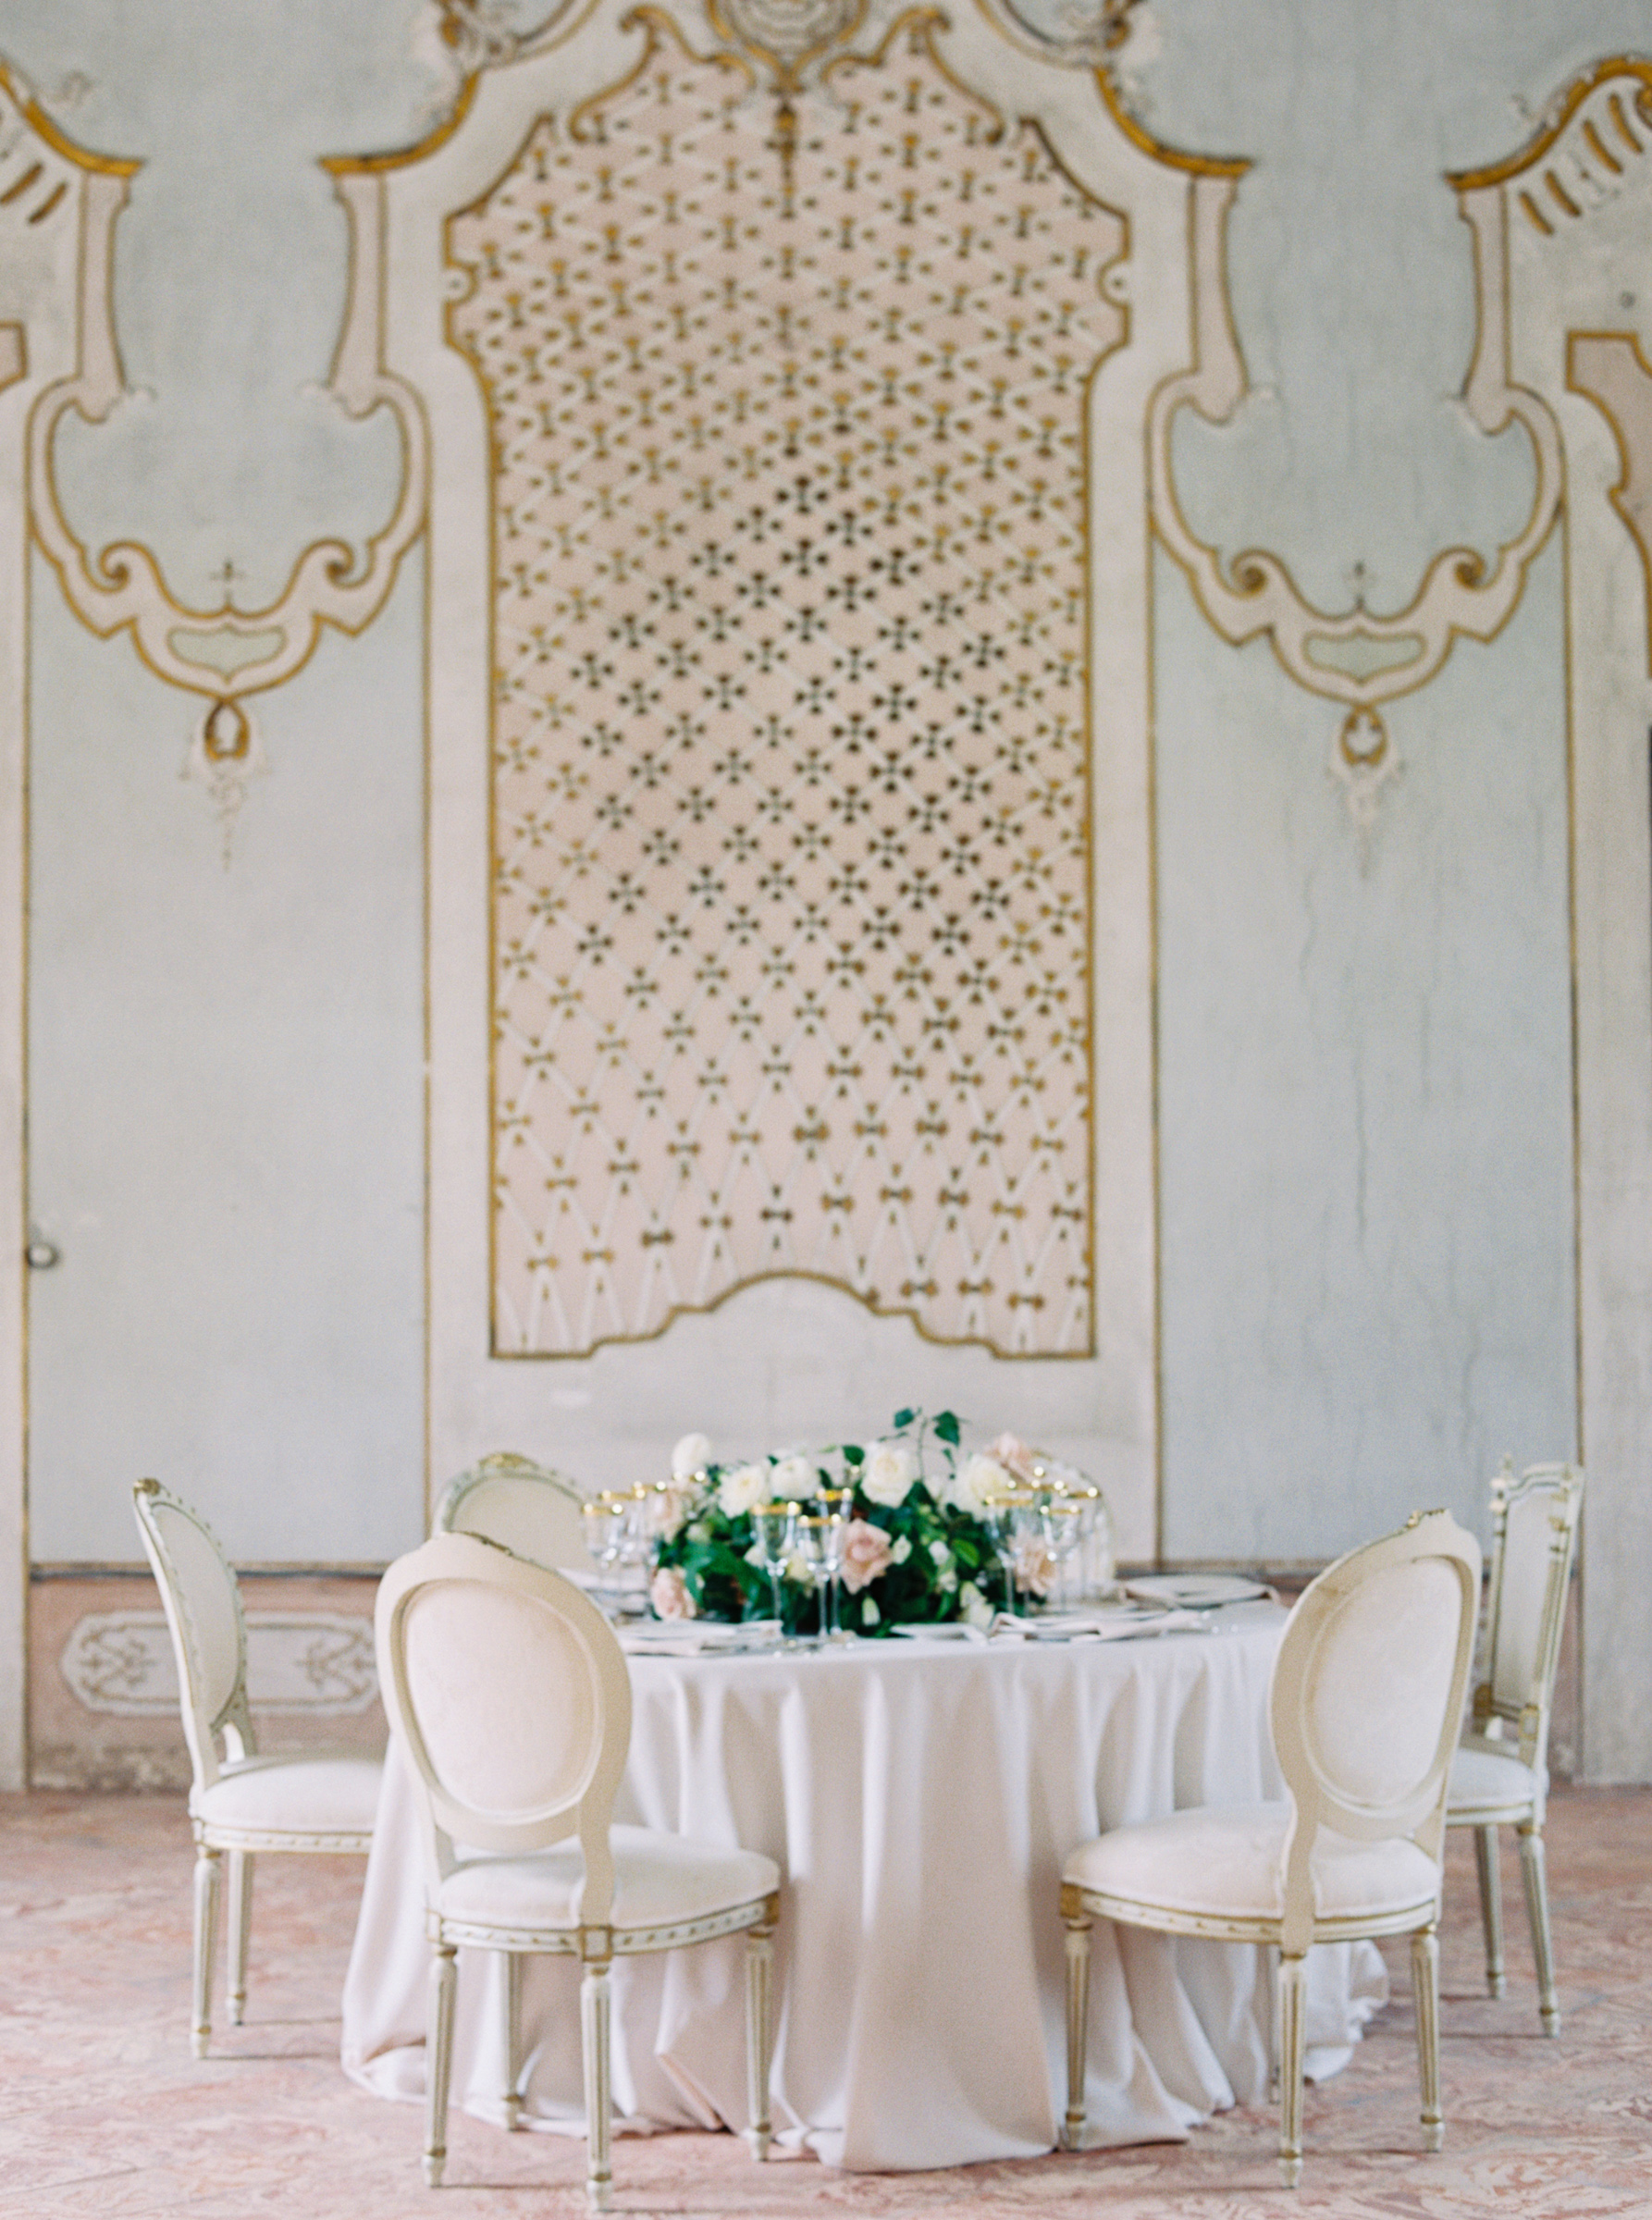 tables in reception space at villa arconati